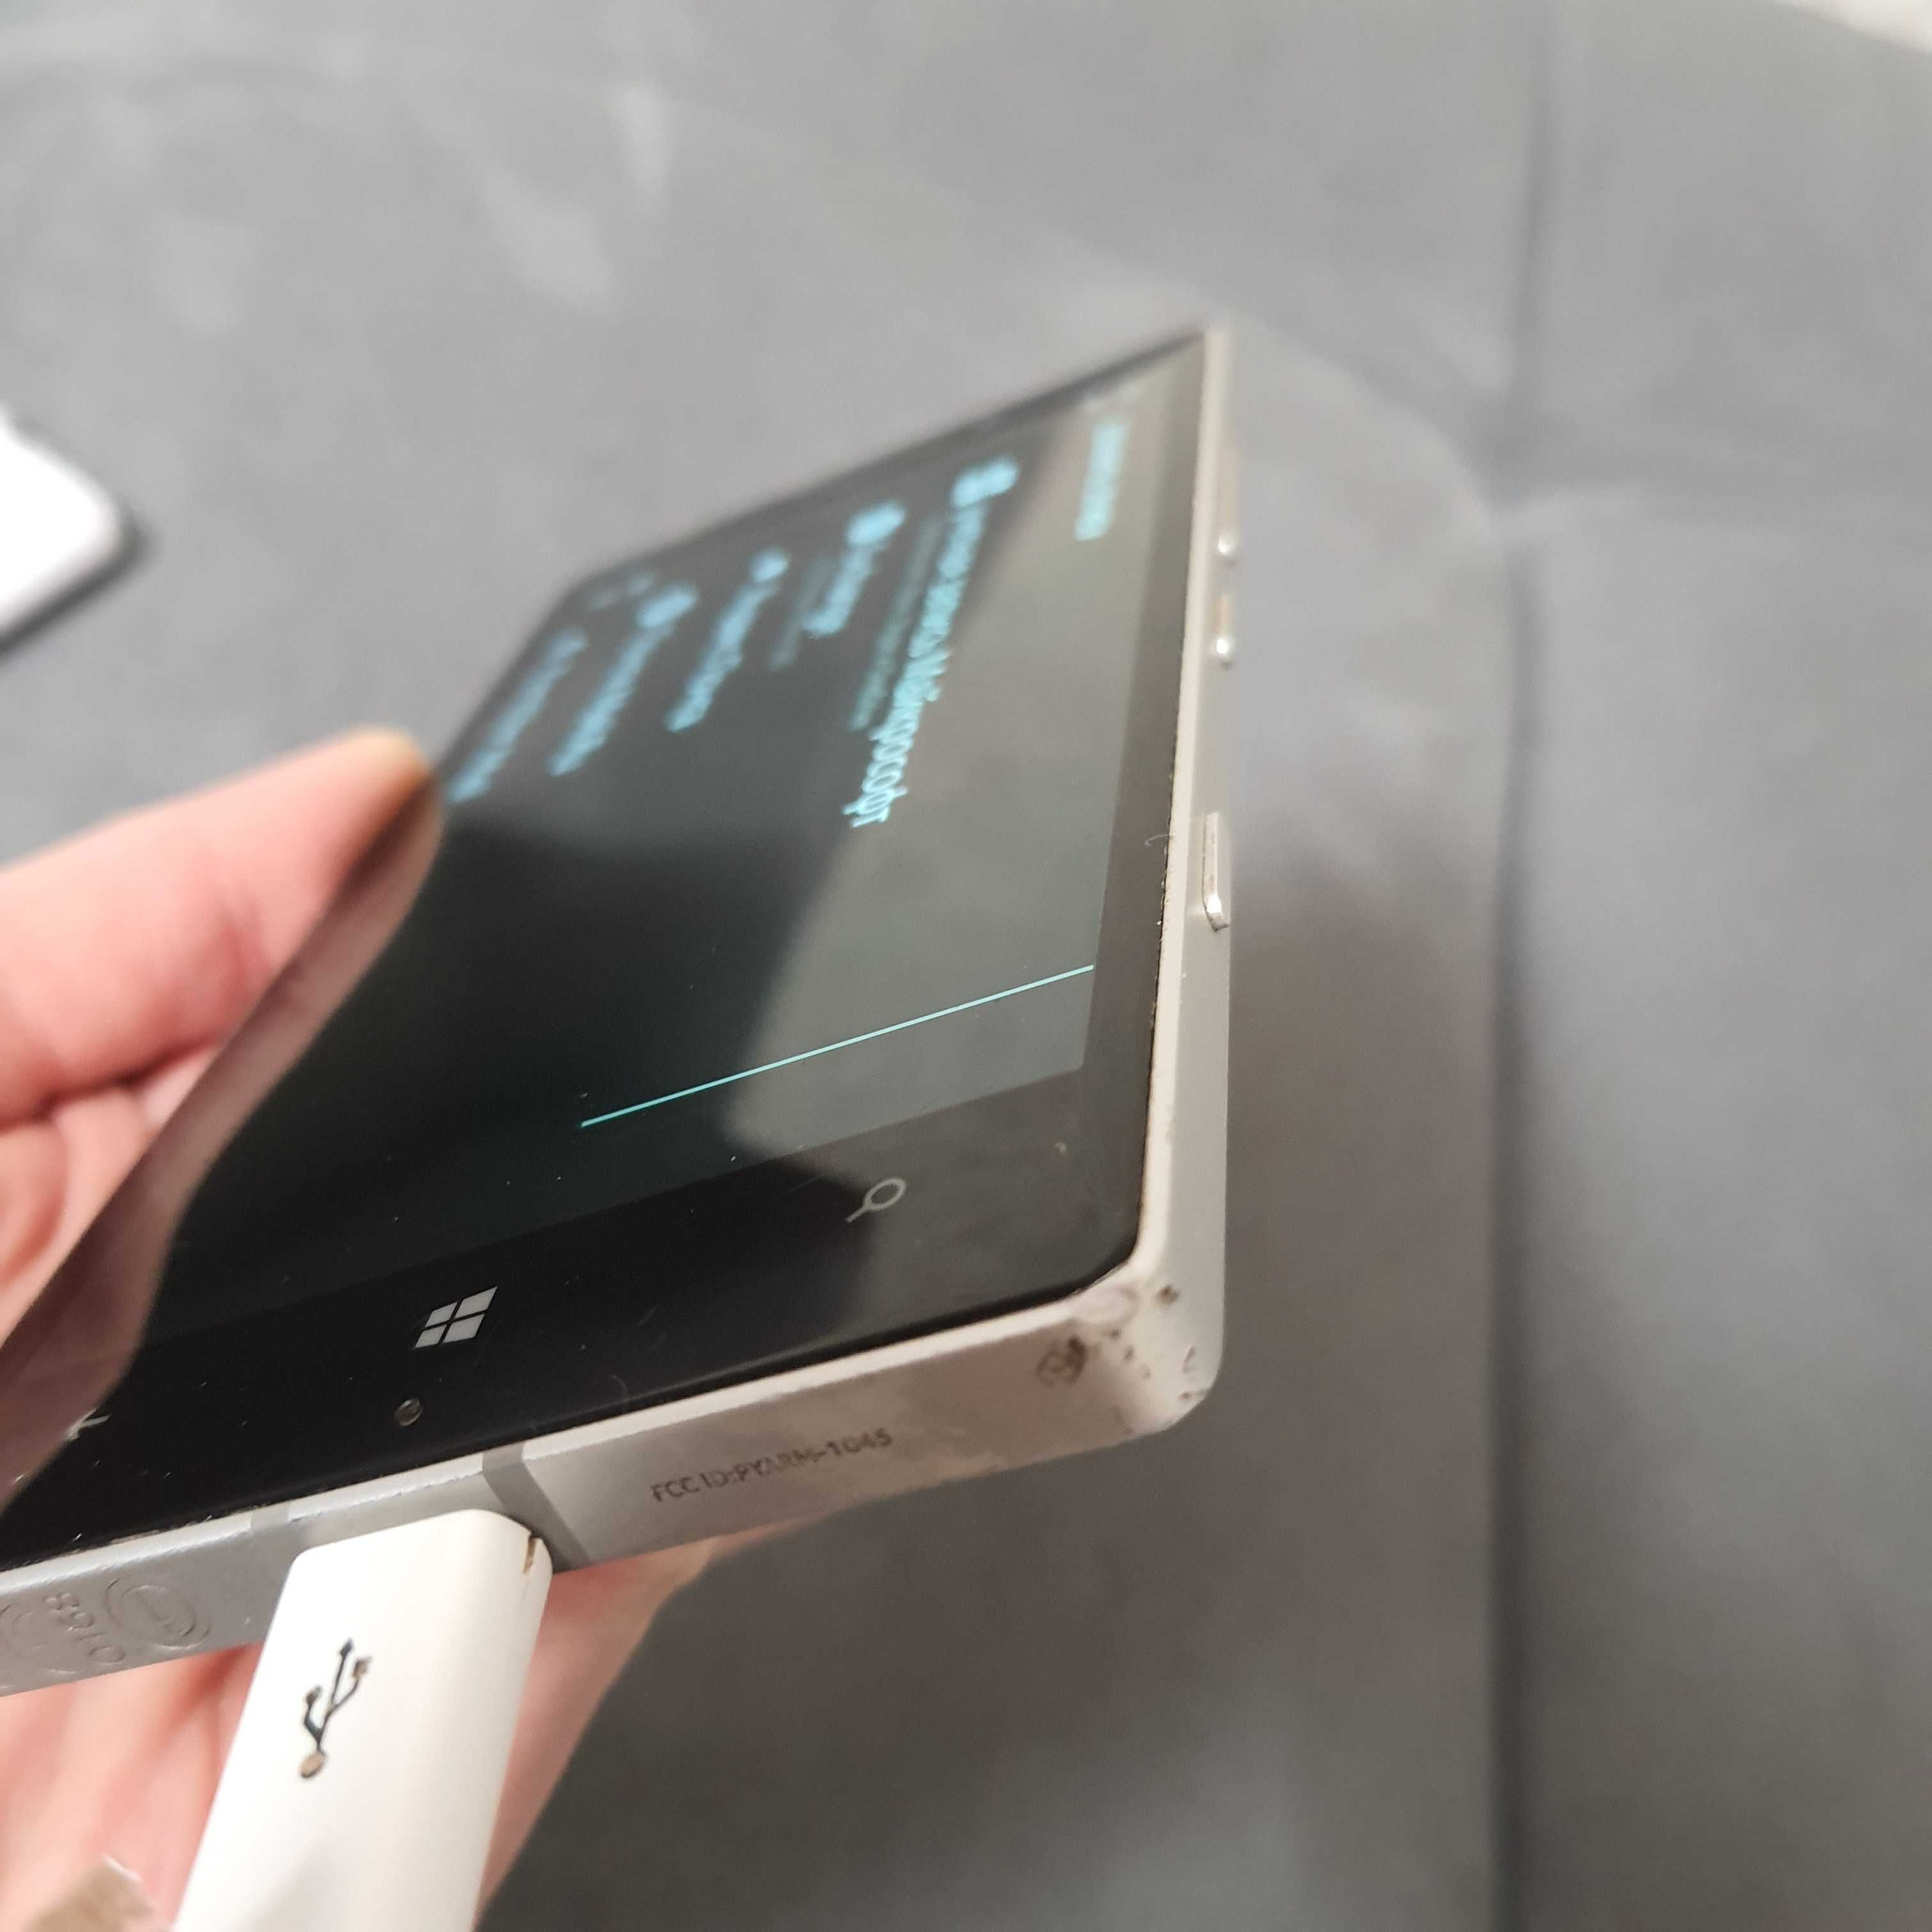 Смартфон Nokia lumia 930 white есть нюансы